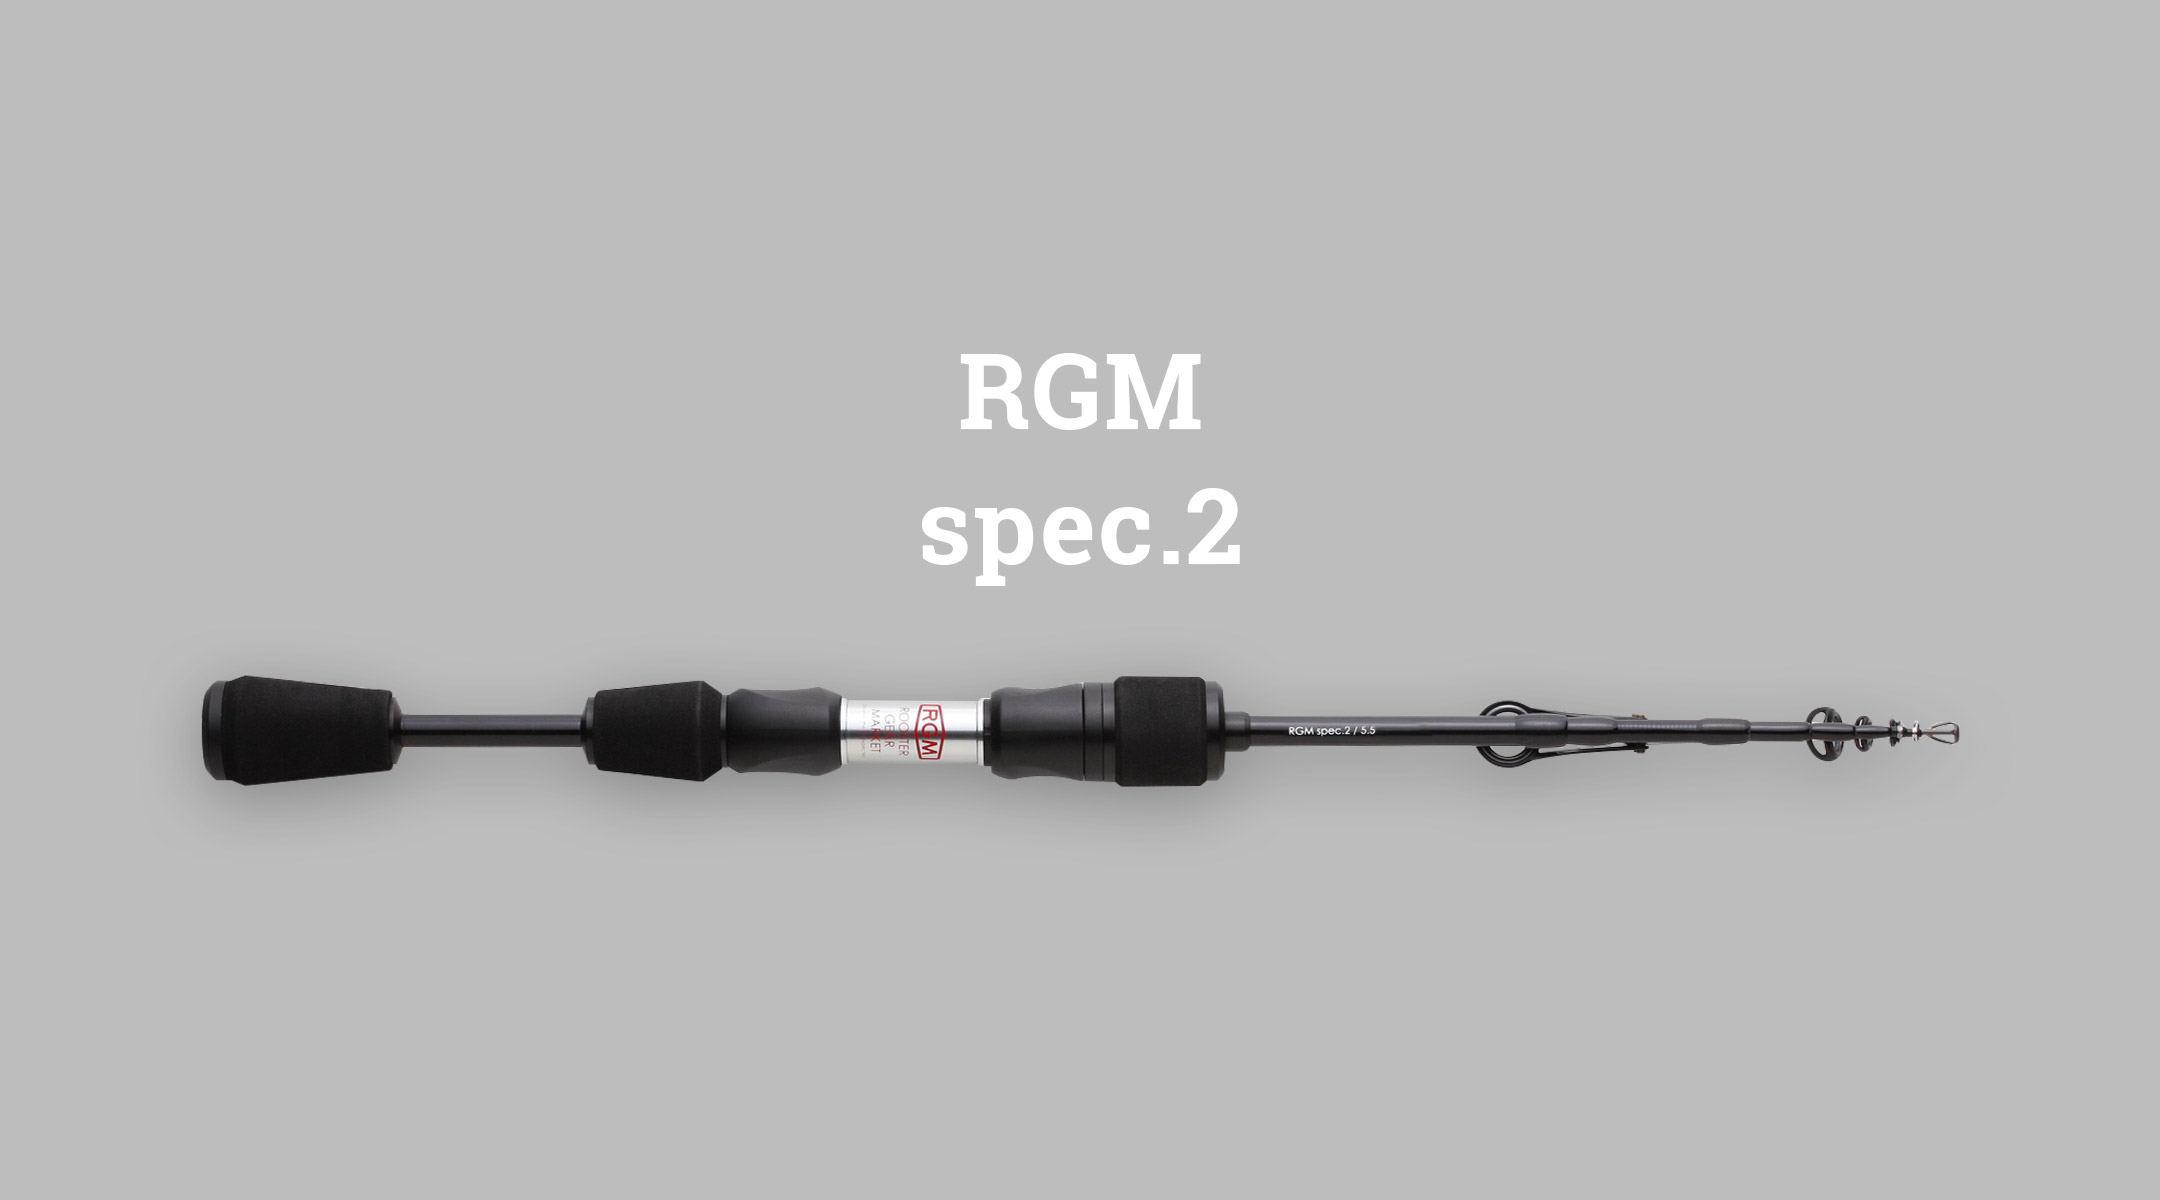 RGM spec.2 | ROOSTER GEAR MARKET | Rooster Gear Market